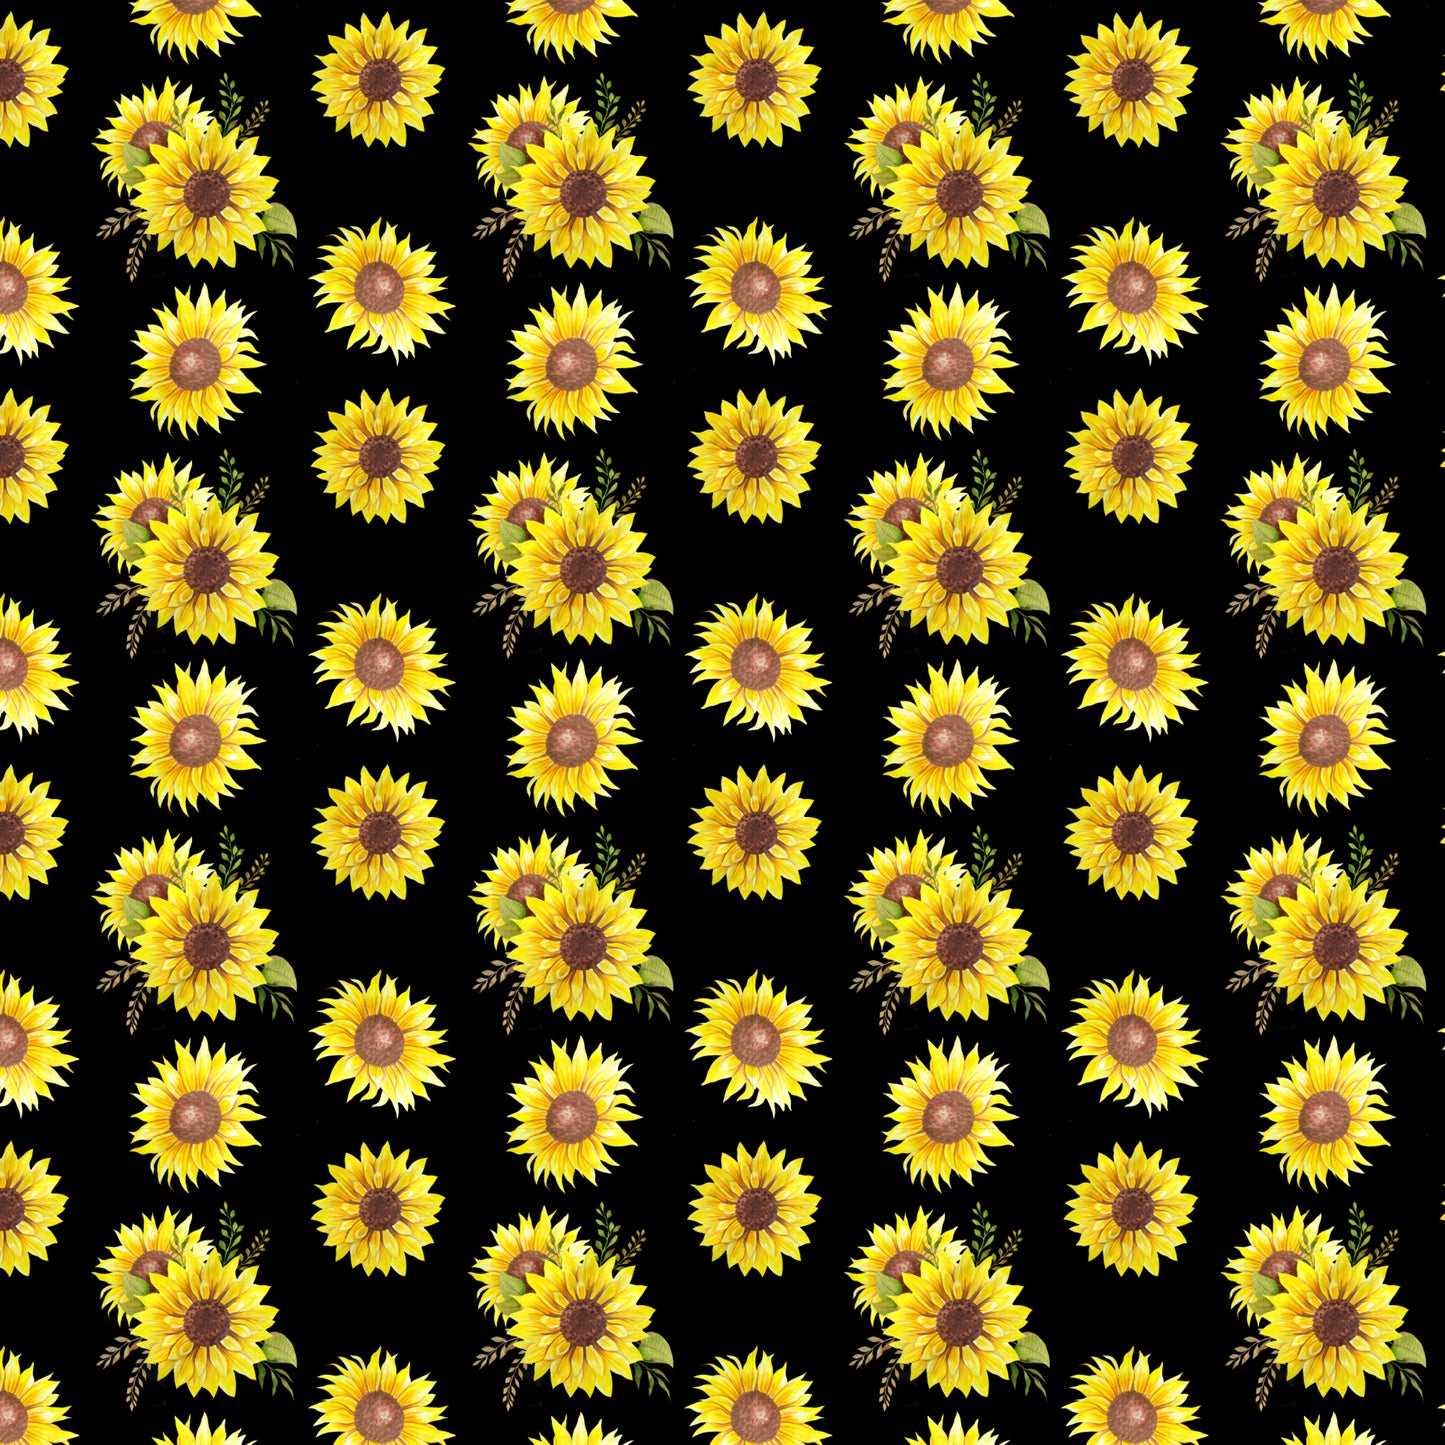 Sunflower 001 Vinyl Sheet